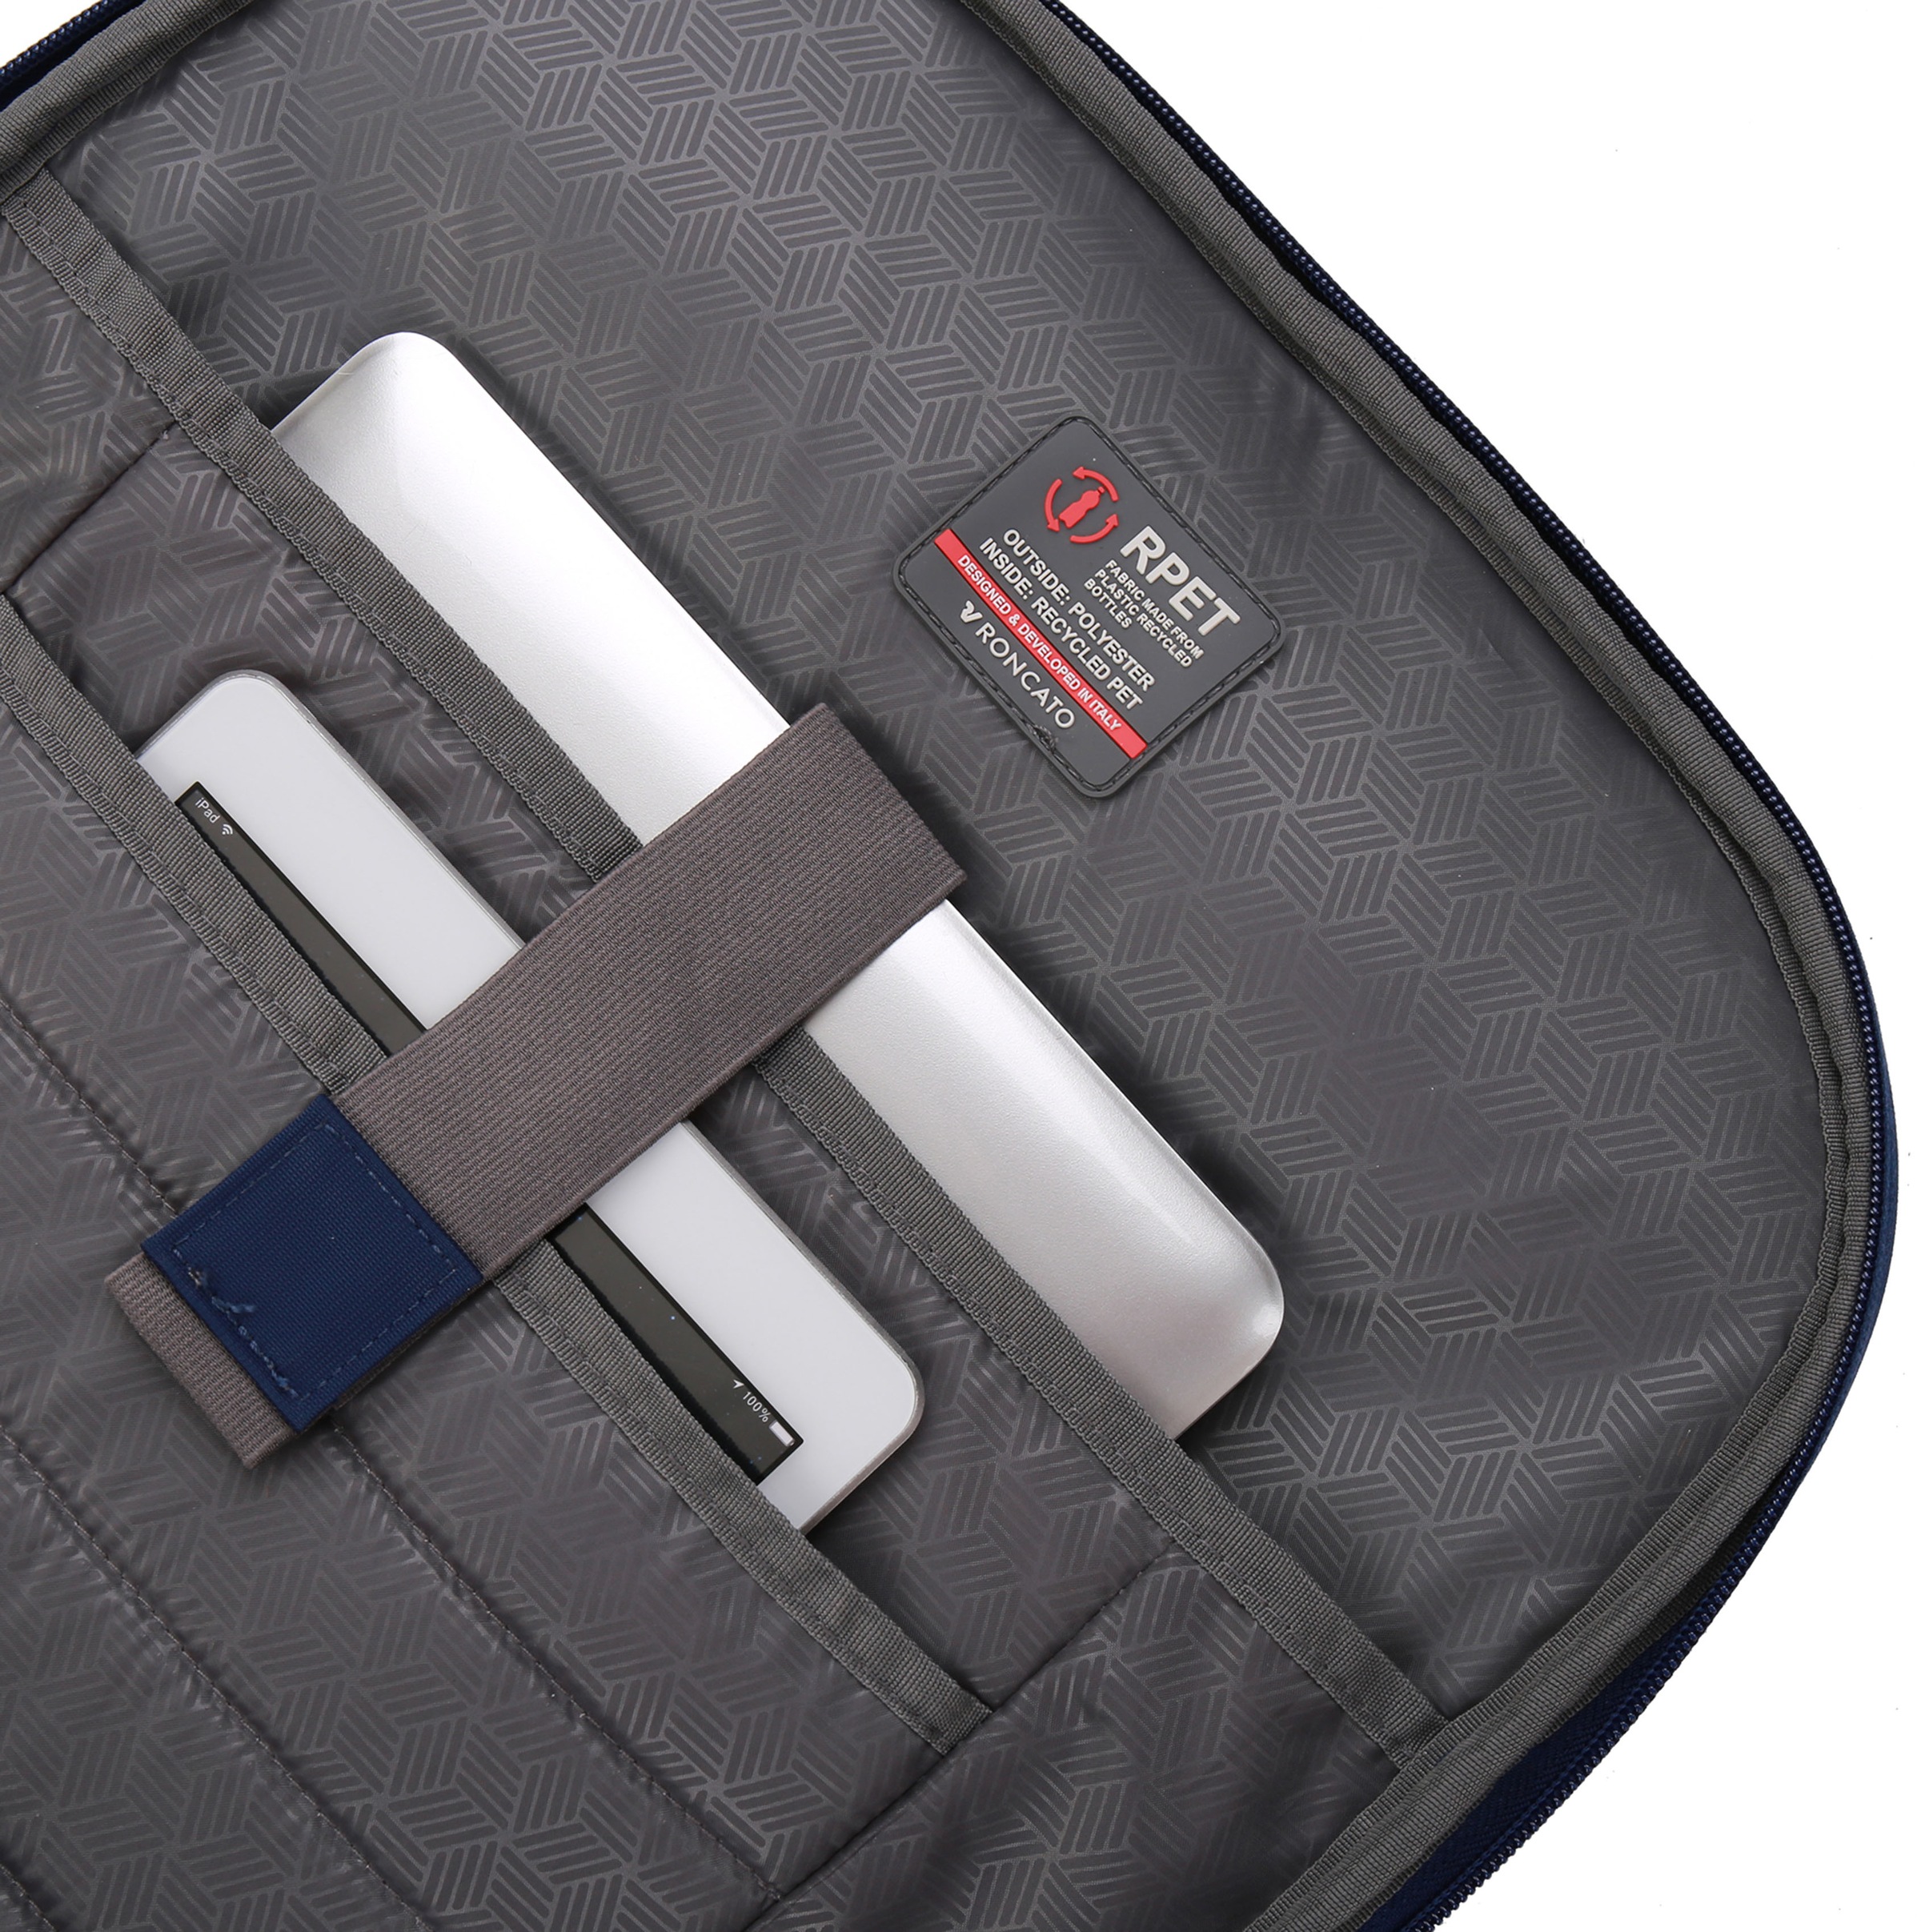 RONCATO Laptoprucksack »Crosslite«, Reiserucksack Handgepäck-Rucksack mit Trolley-Funktion